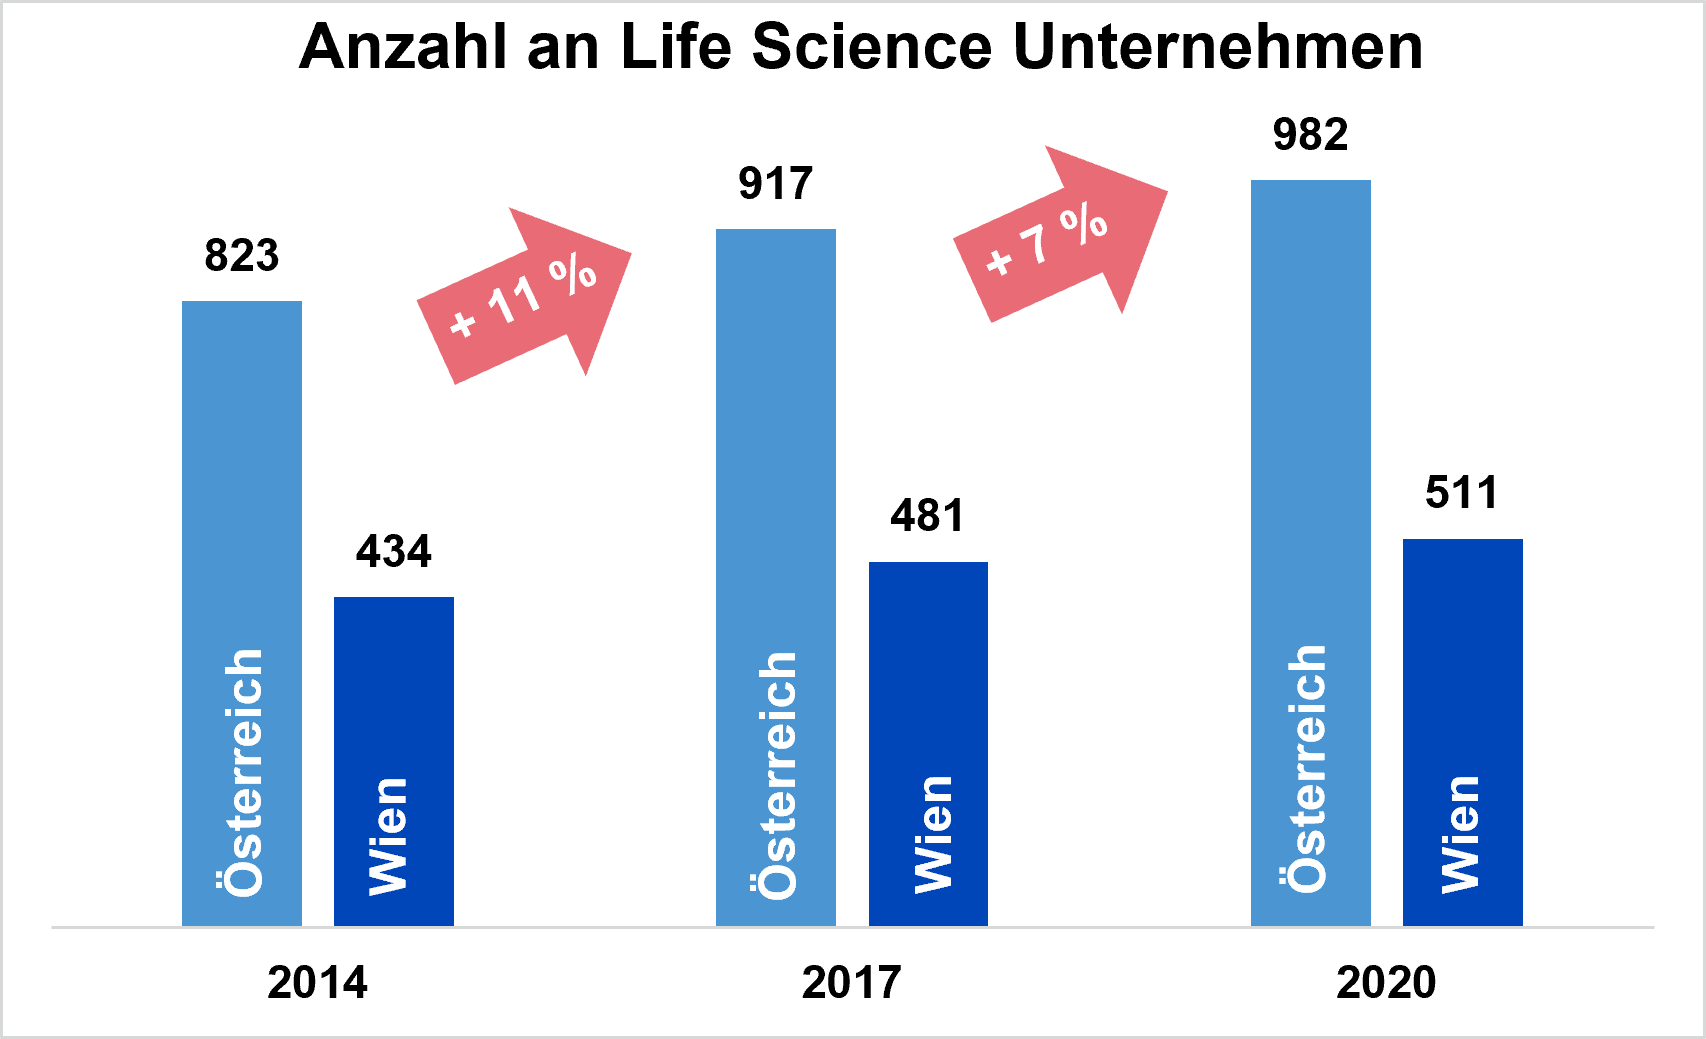 Anzahl Life Science Unternehmen Österreich